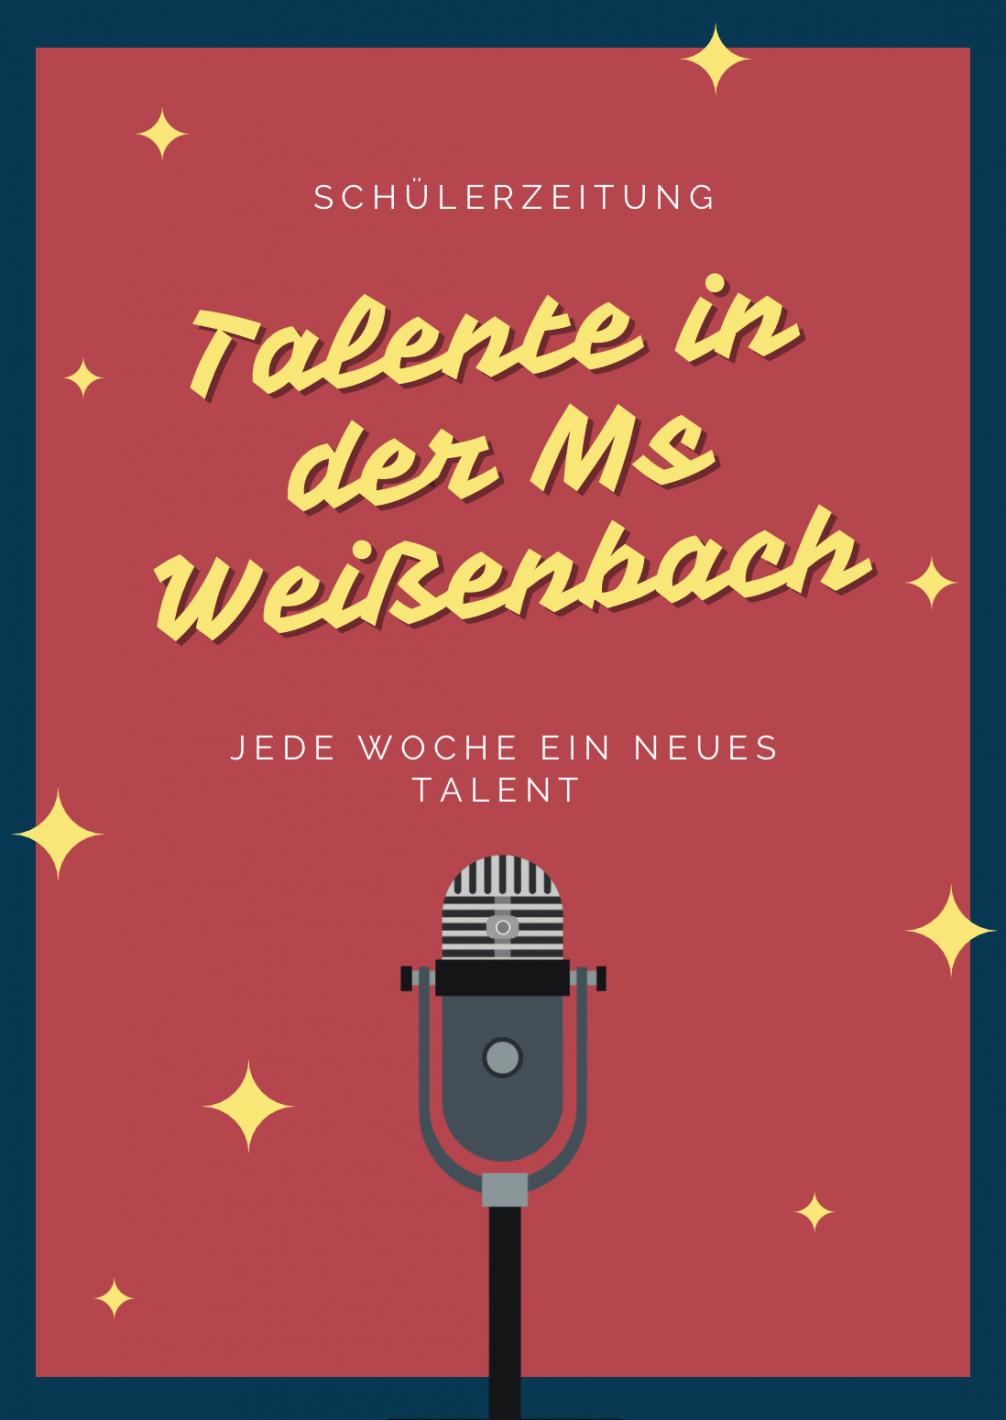 Talente in der MS Weissenbach